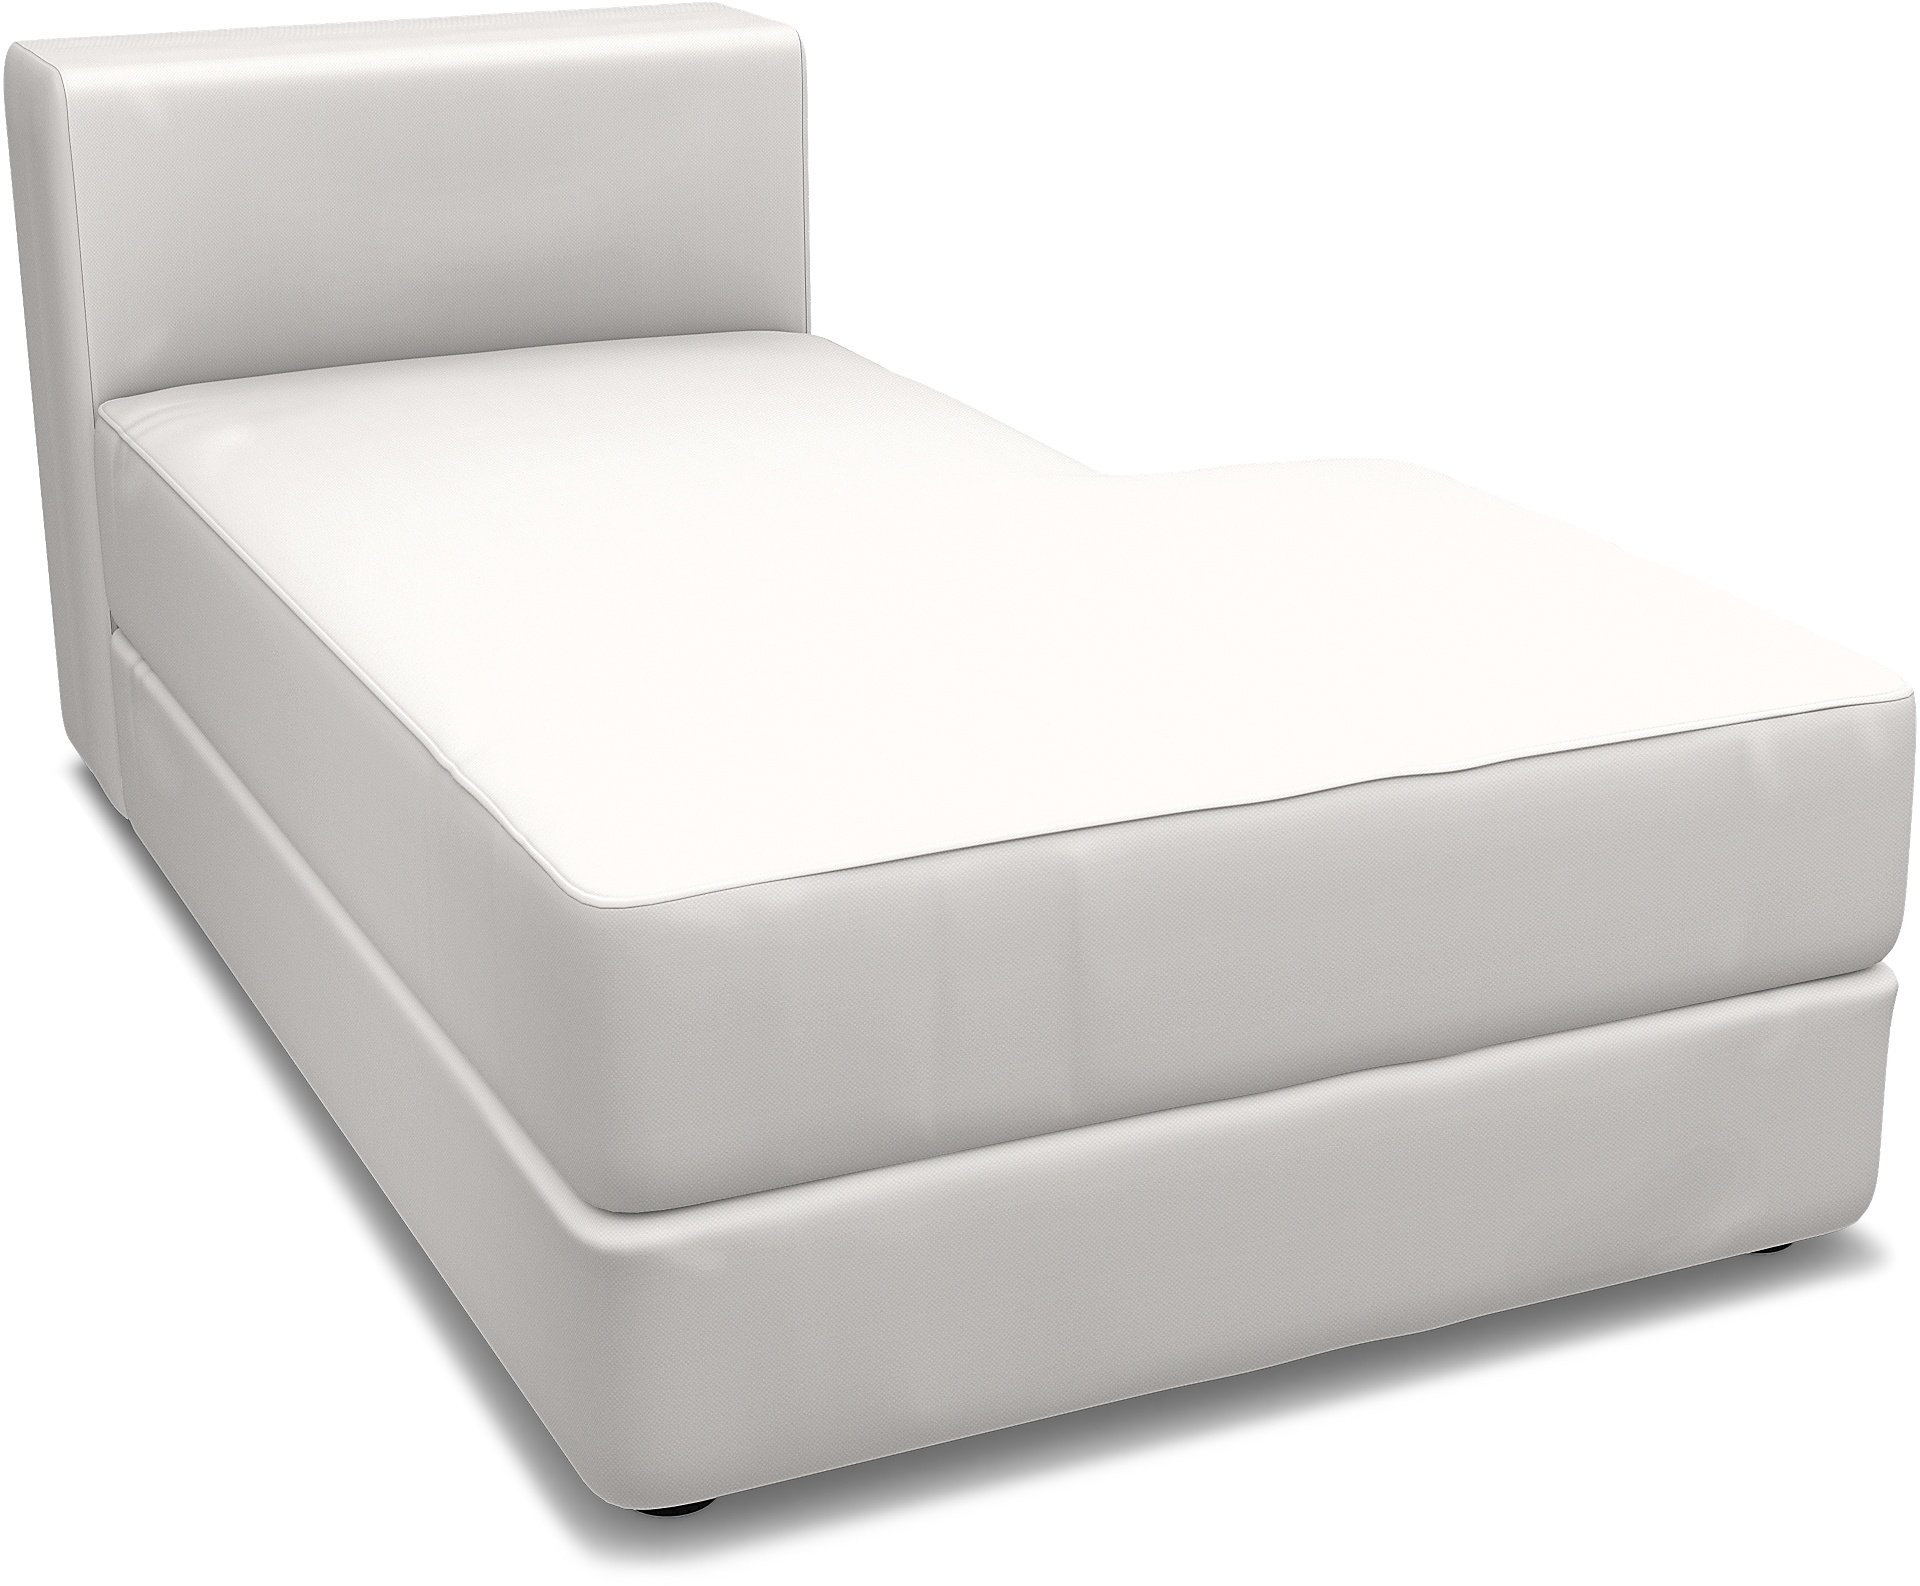 IKEA - Jattebo Chaise Module Cover (right), Soft White, Linen - Bemz